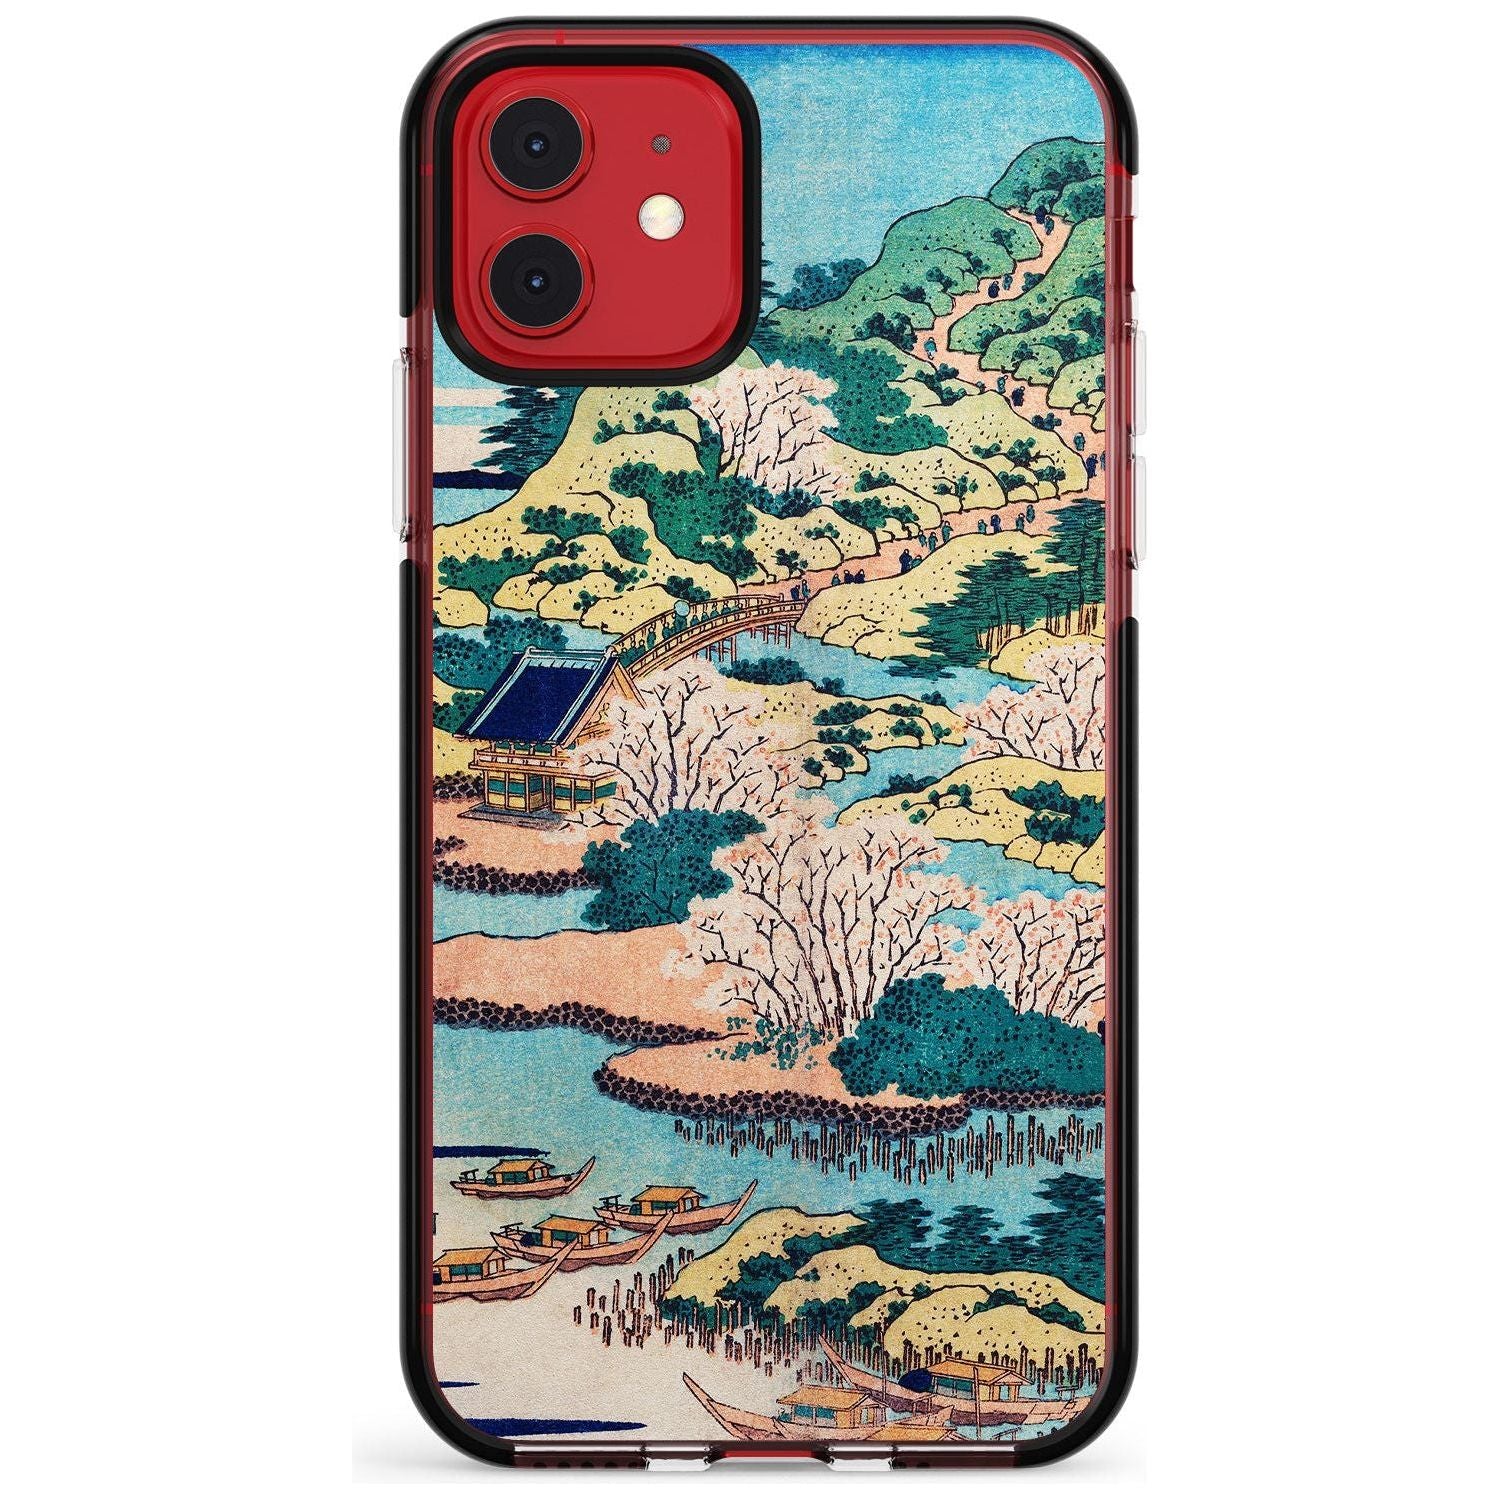 Coastal Community by Katsushika Hokusai  Pink Fade Impact Phone Case for iPhone 11 Pro Max